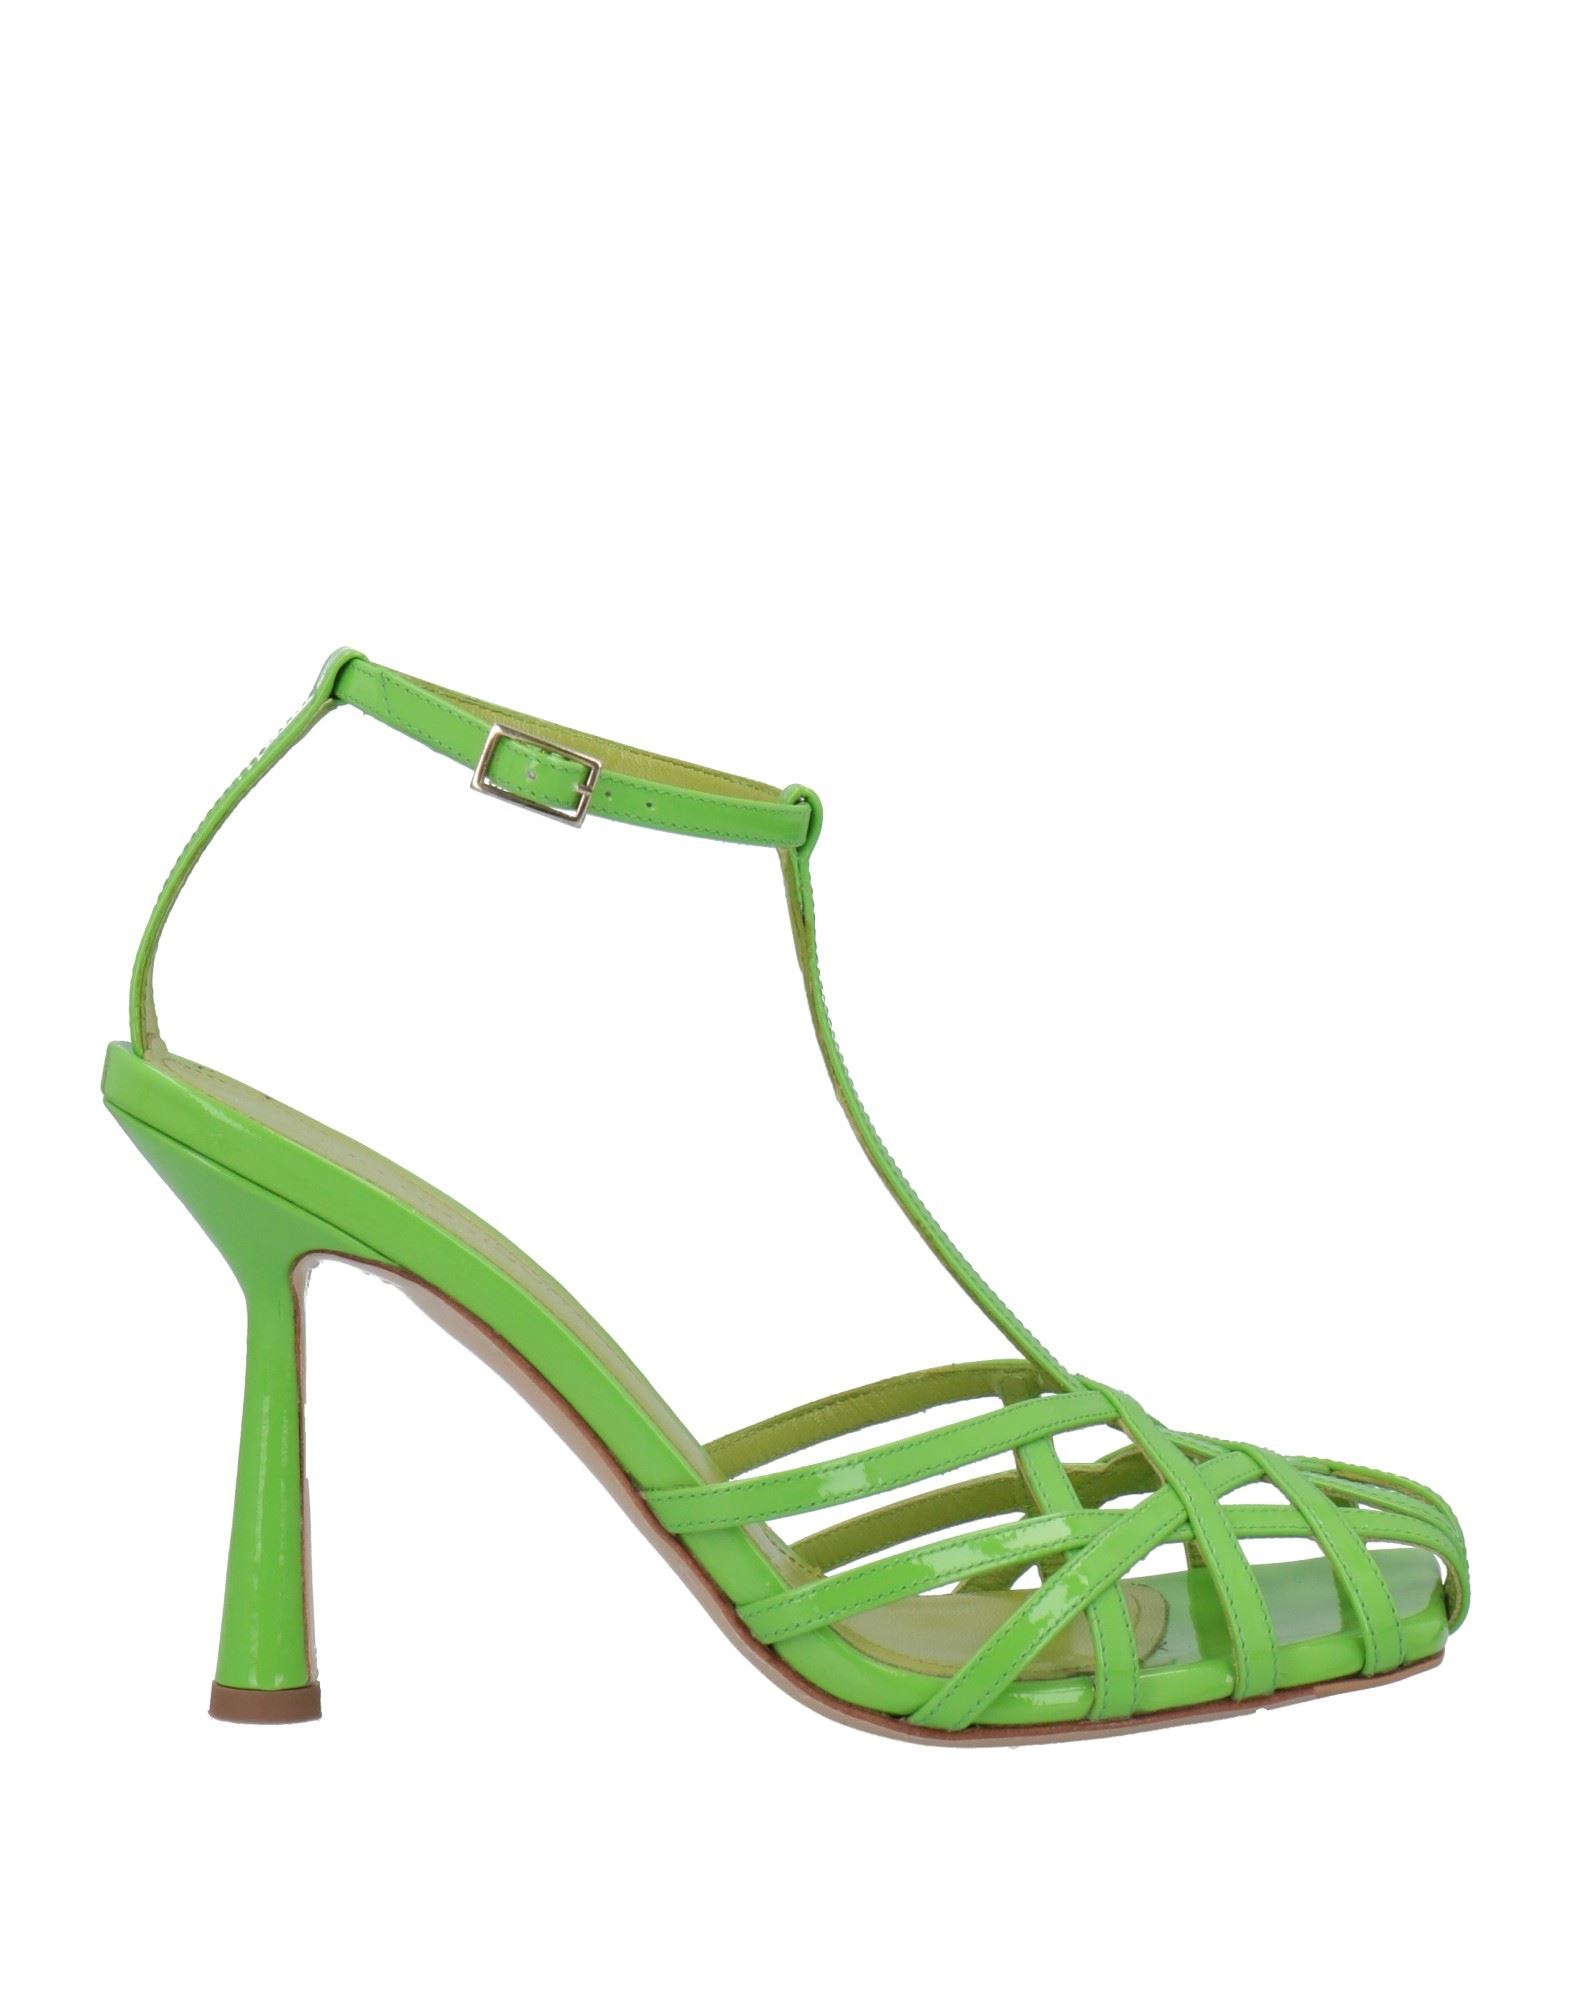 Shop Aldo Castagna Woman Sandals Green Size 7 Soft Leather